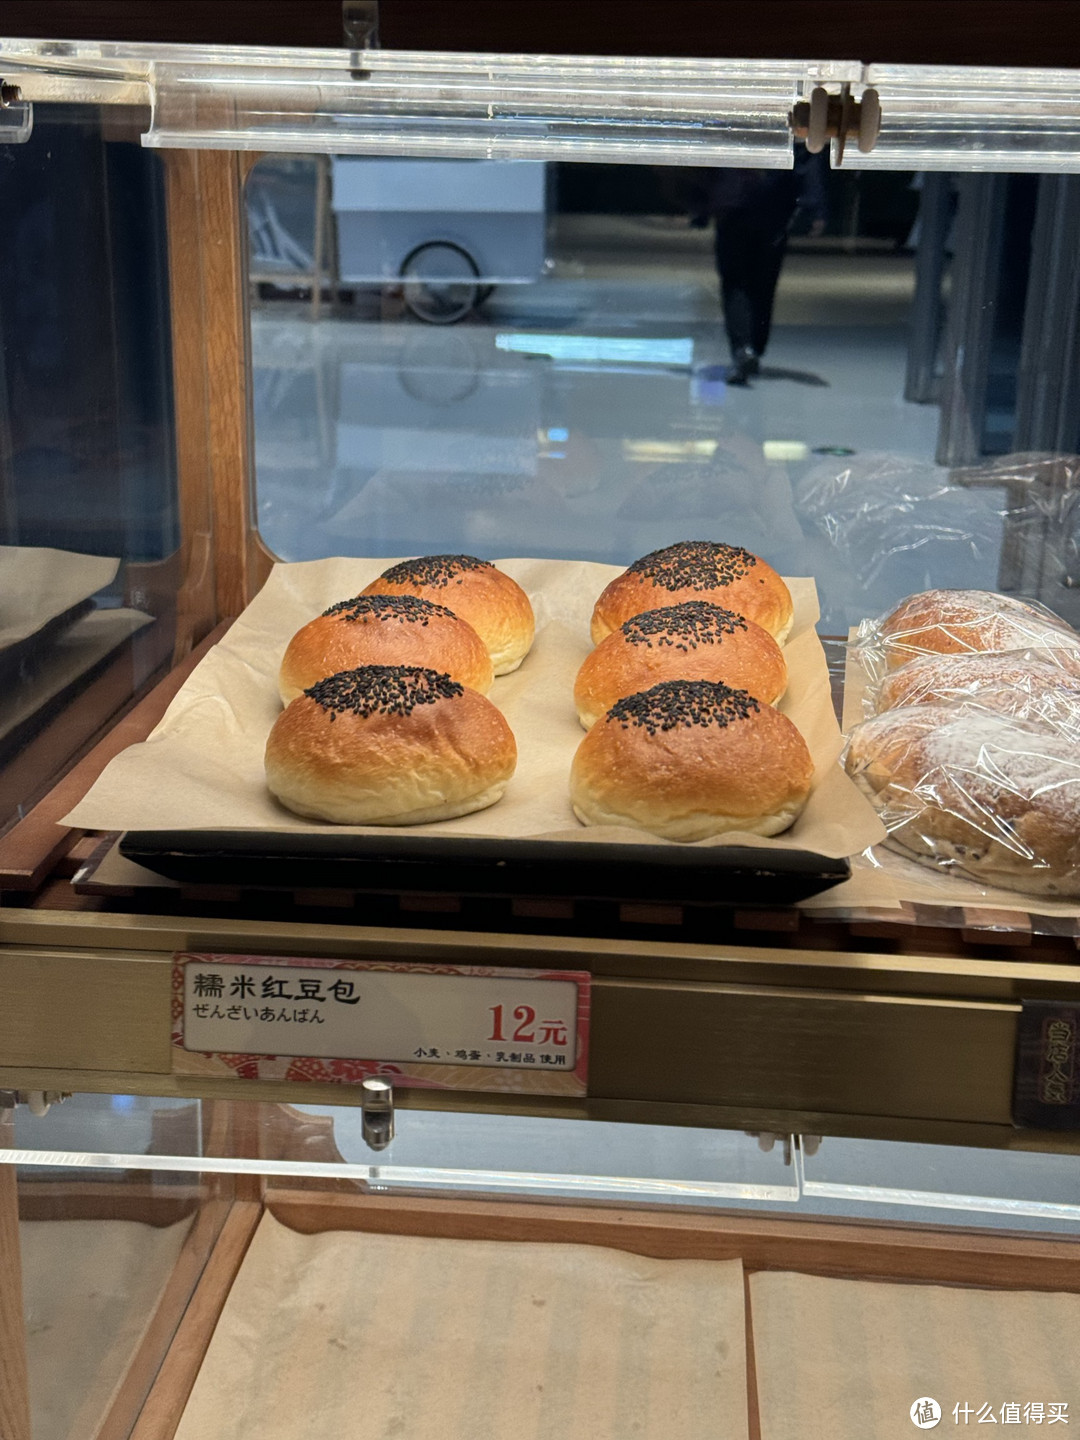 杭州l发现一家奶油脑袋会非常爱的面包店